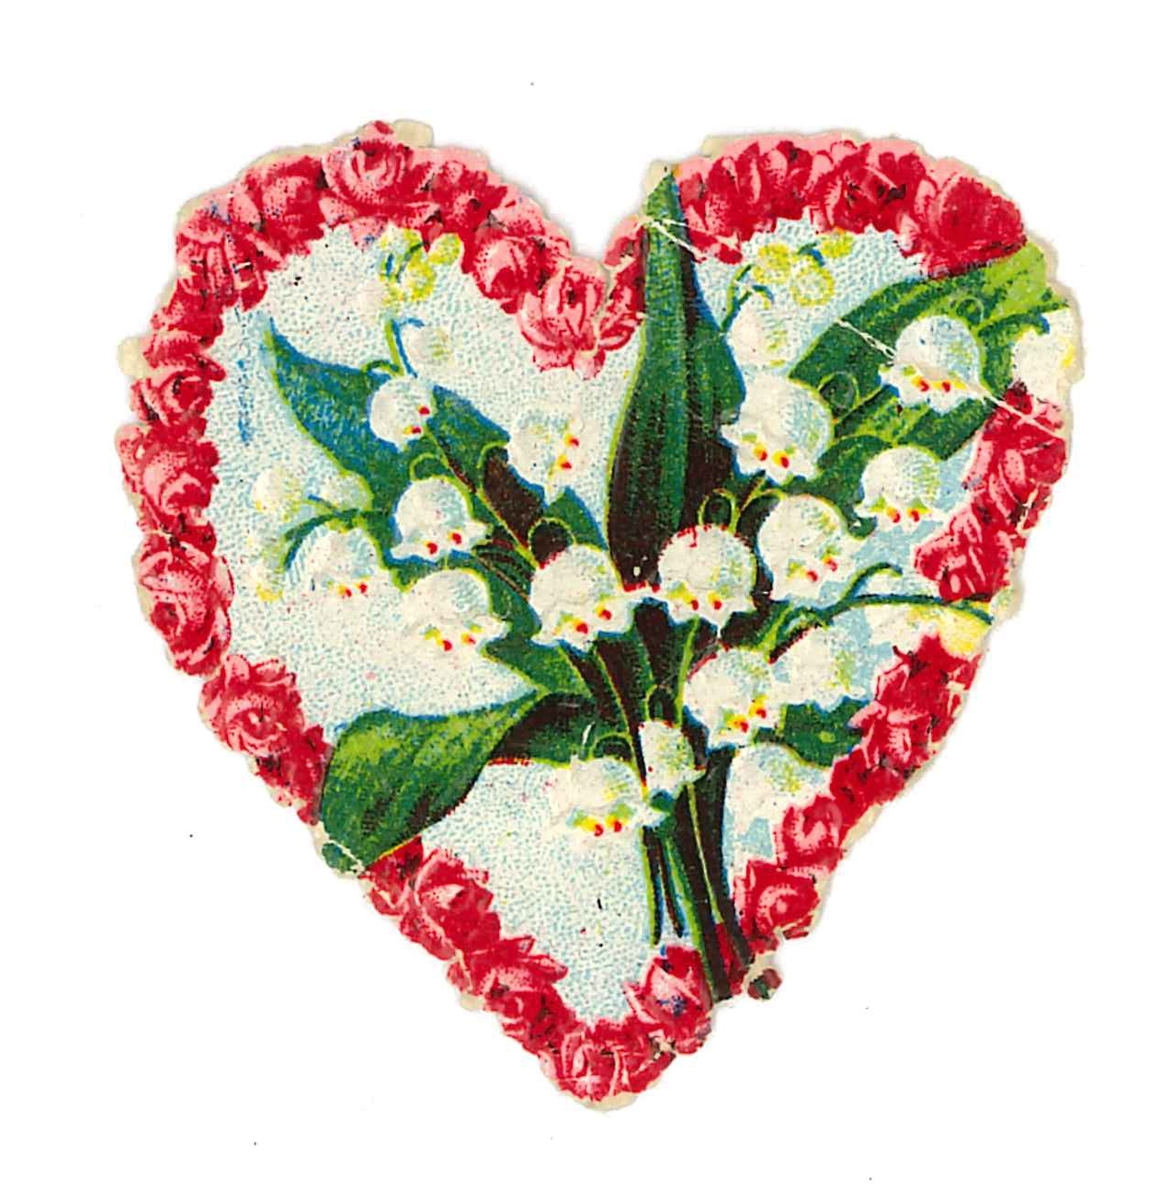 Bokmärke med röda blommor i en hjärtform. I hjärtat finns liljekonvaljer.

Ingår i en samling av 87 bokmärken. Motiven är främst blomstermotiv, religiösa motiv, tomtar samt barn i olika sysselsättningar. Storlekarna varierar mellan 1,3 x 1,6 cm -10,3 x 15,9 cm. Till bokmärkena hör ett kuvert med 47 hemmagjorda lotter samt ett utskuret stycke ur en välskrivningsbok från skolan.

Boken har blå pärm . Lotteriet och boken användes när skolflickorna bytte bokmärken med varandra. Några av bokmärkena ligger i en albylask av metall. Samtliga föremål ligger i en lilla papplåda med löst lock.

Lådans mått är L. 18,5 cm. B. 12 cm. H. 2,5 cm. Samtliga föremål är märkta med VM 21 406.